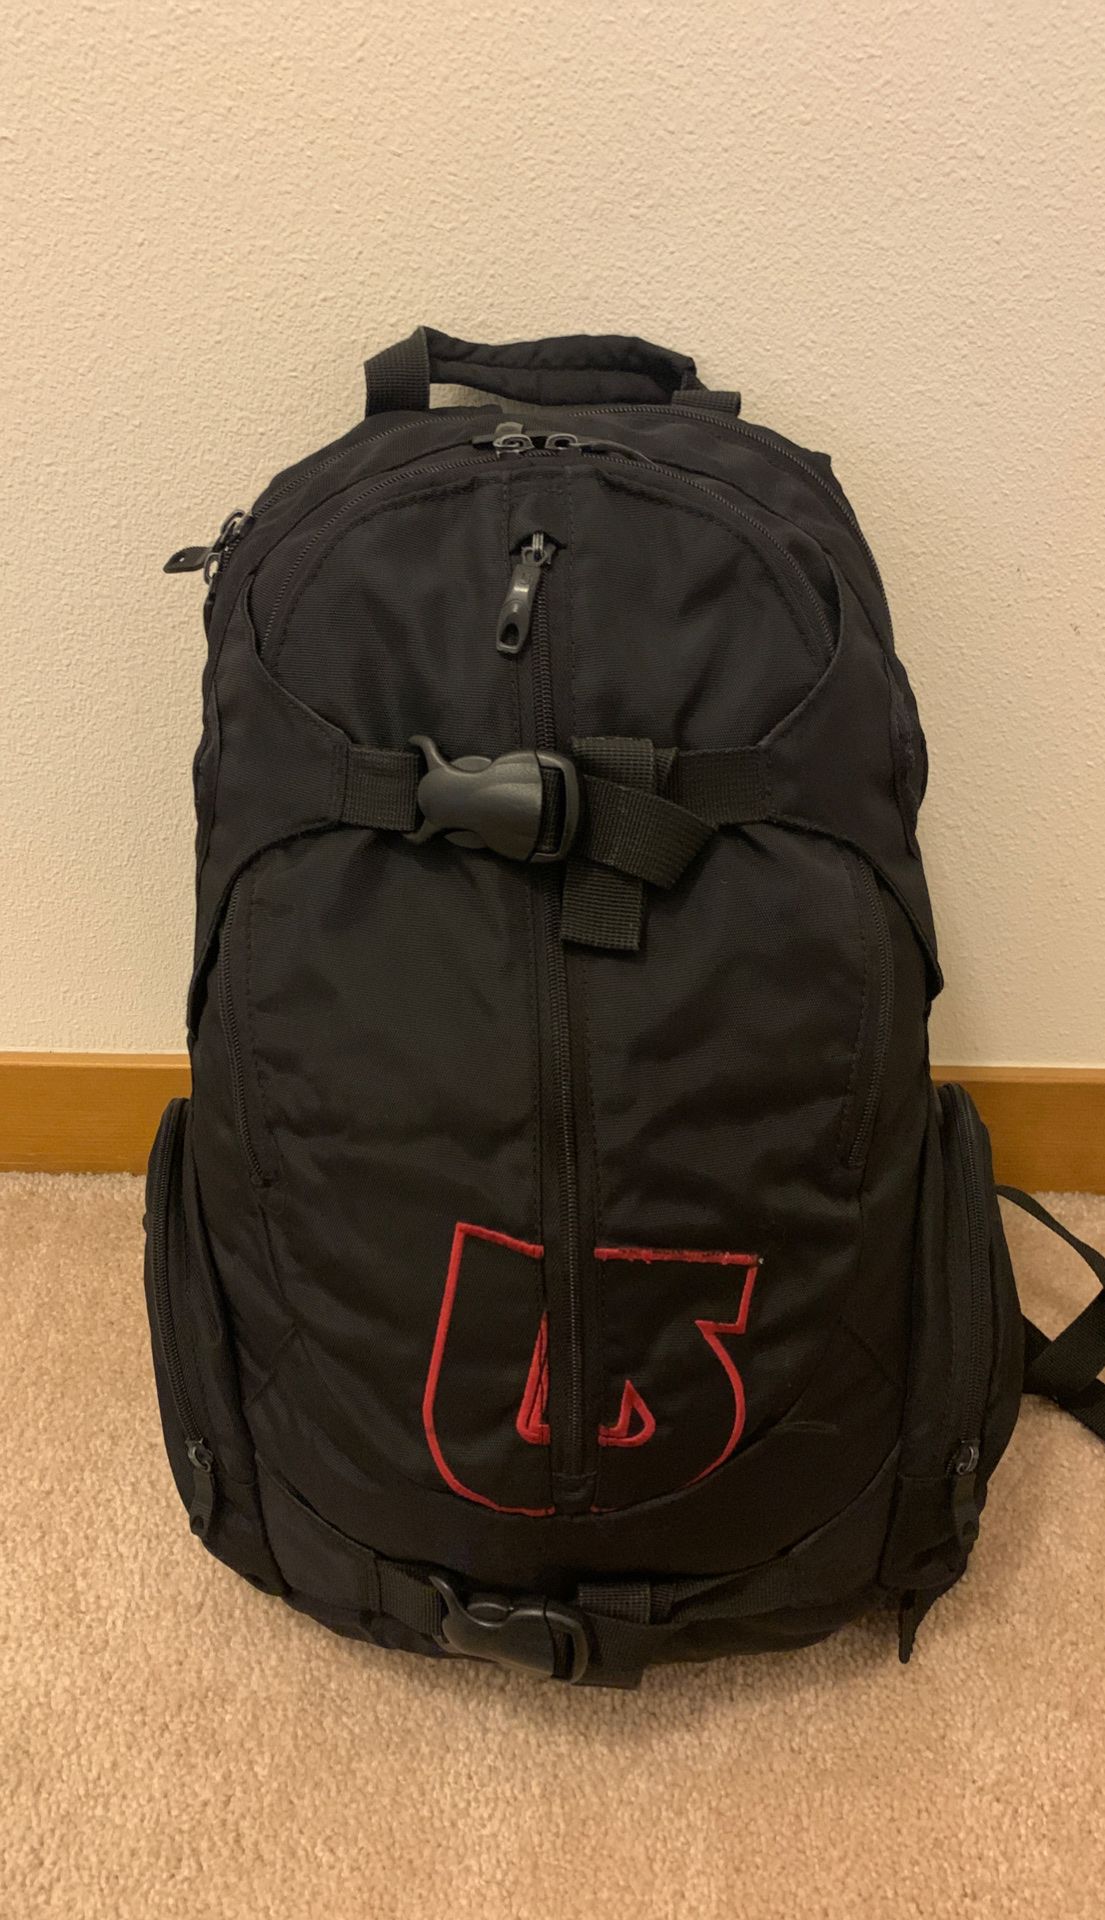 Burton Snowboard Backpack -$20